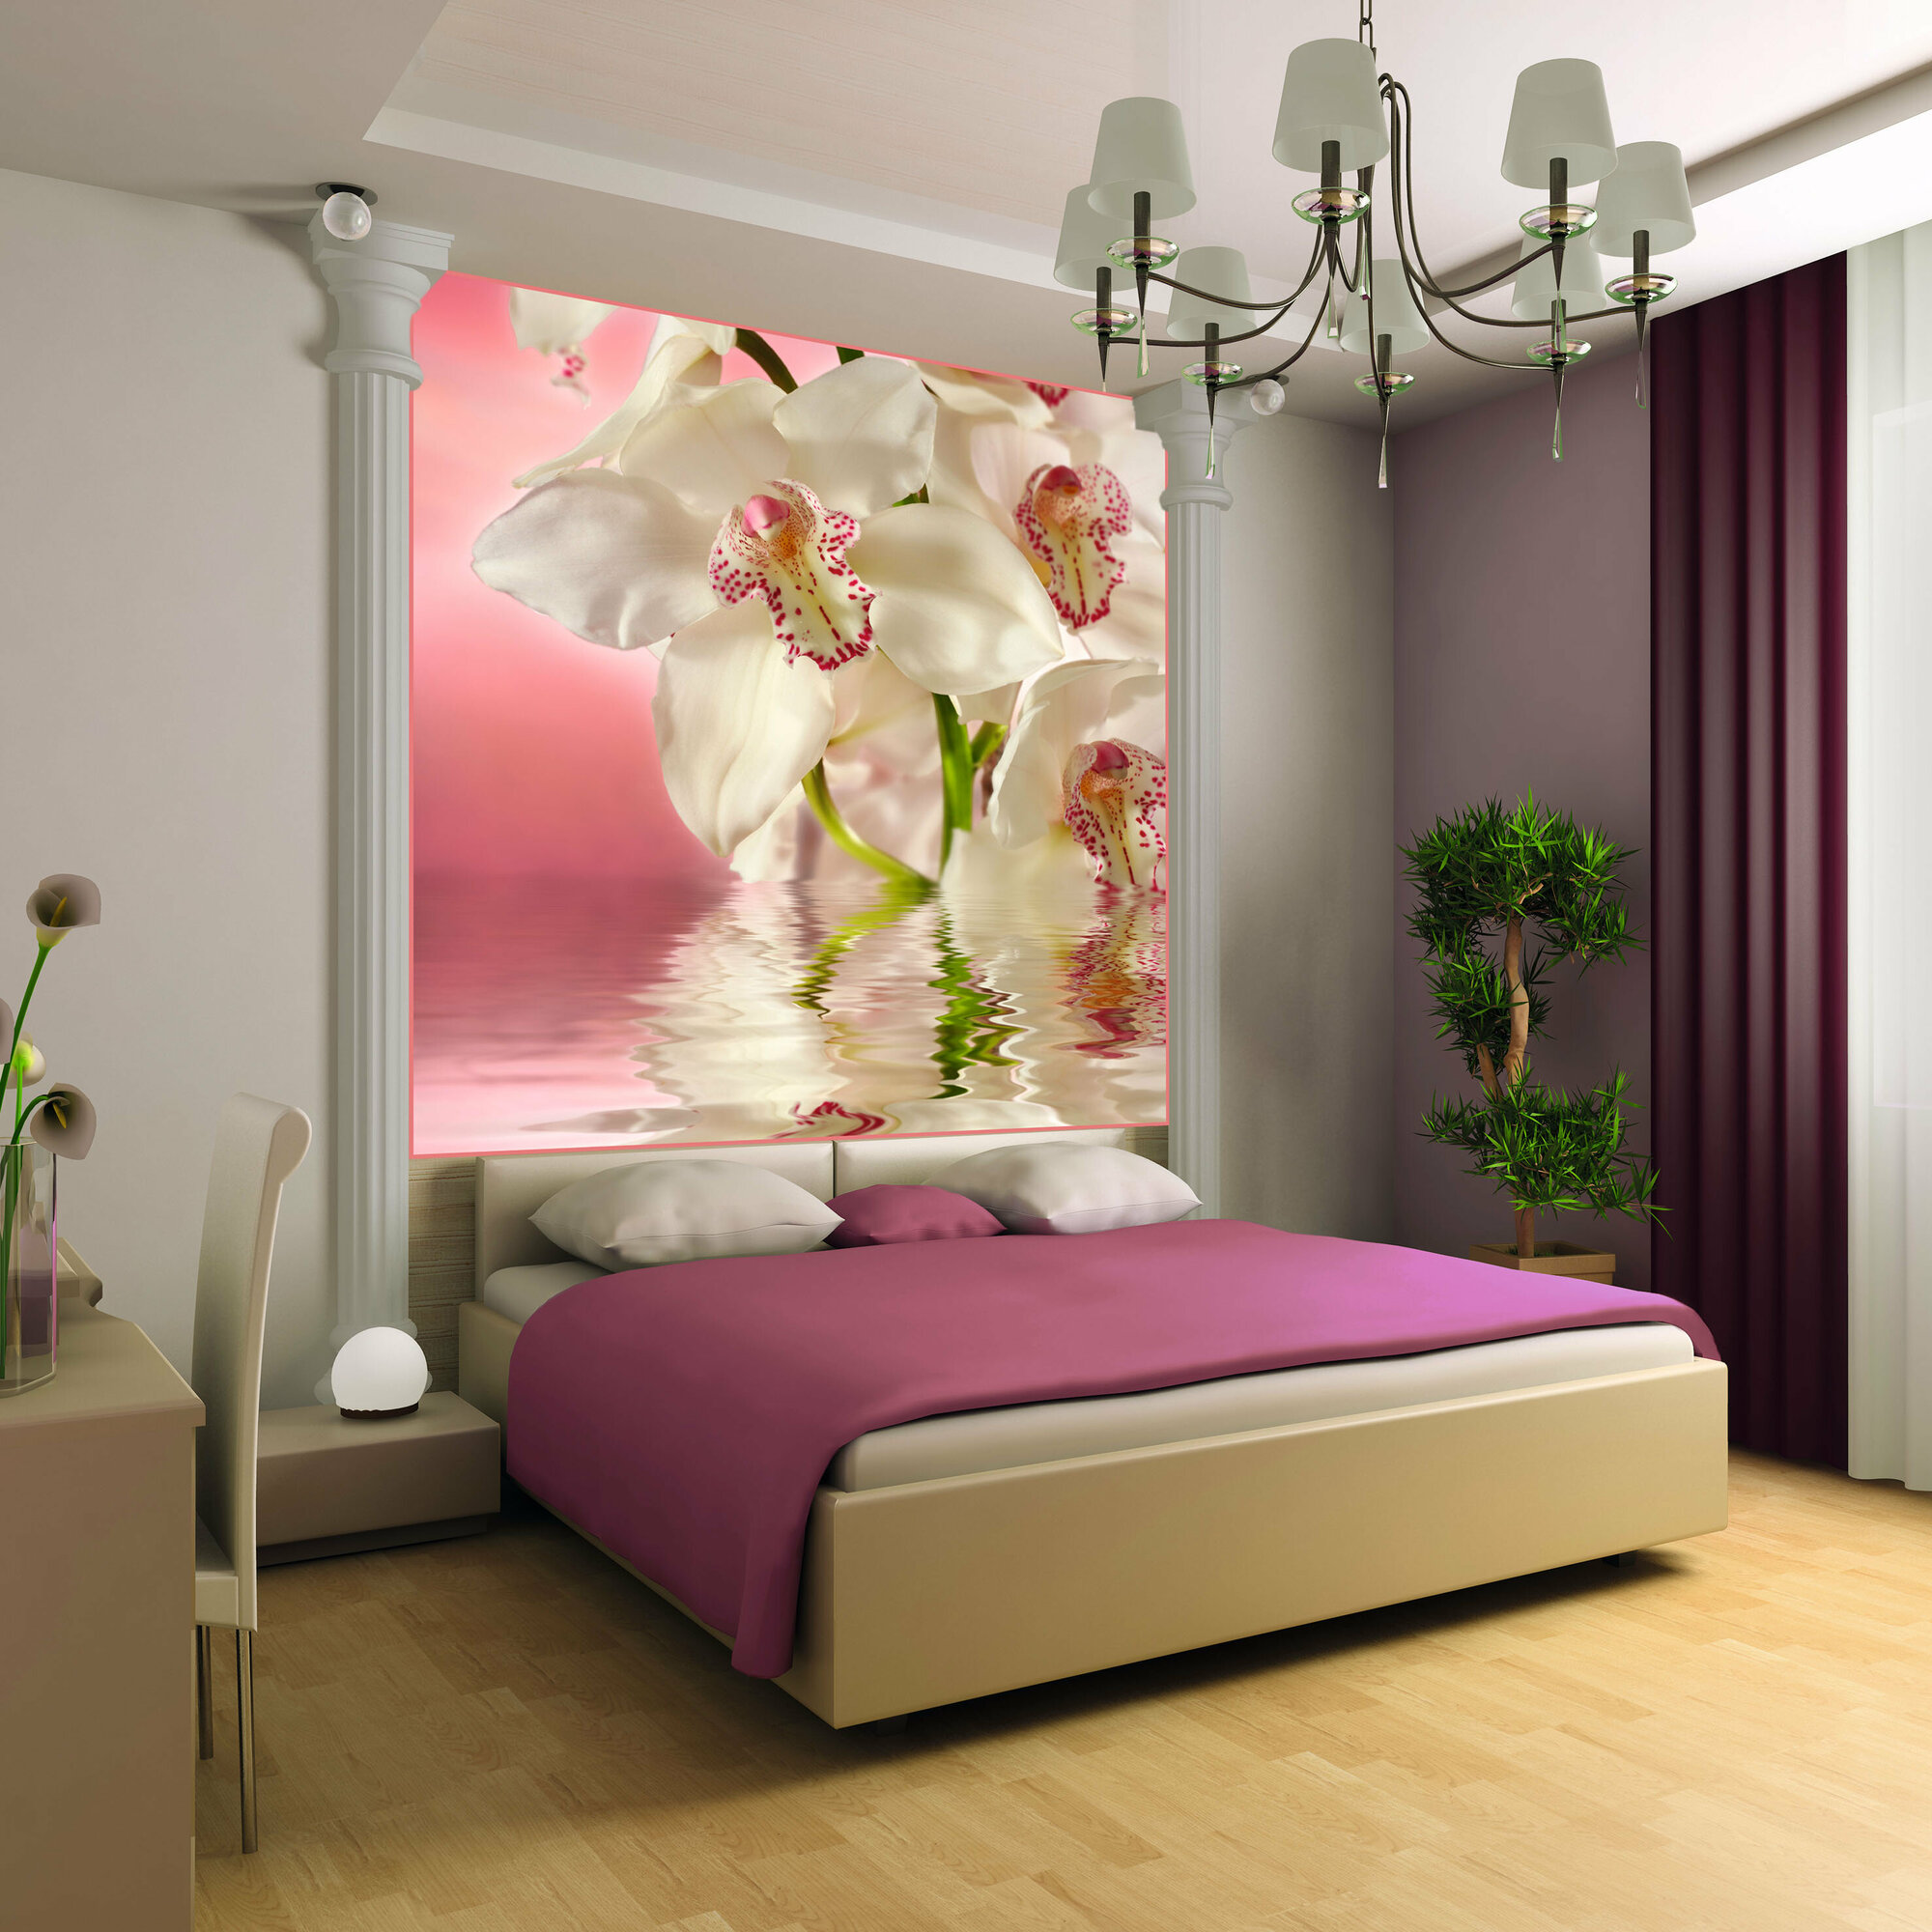 Фотообои Vostorg № 194 Розовая орхидея 196х201см